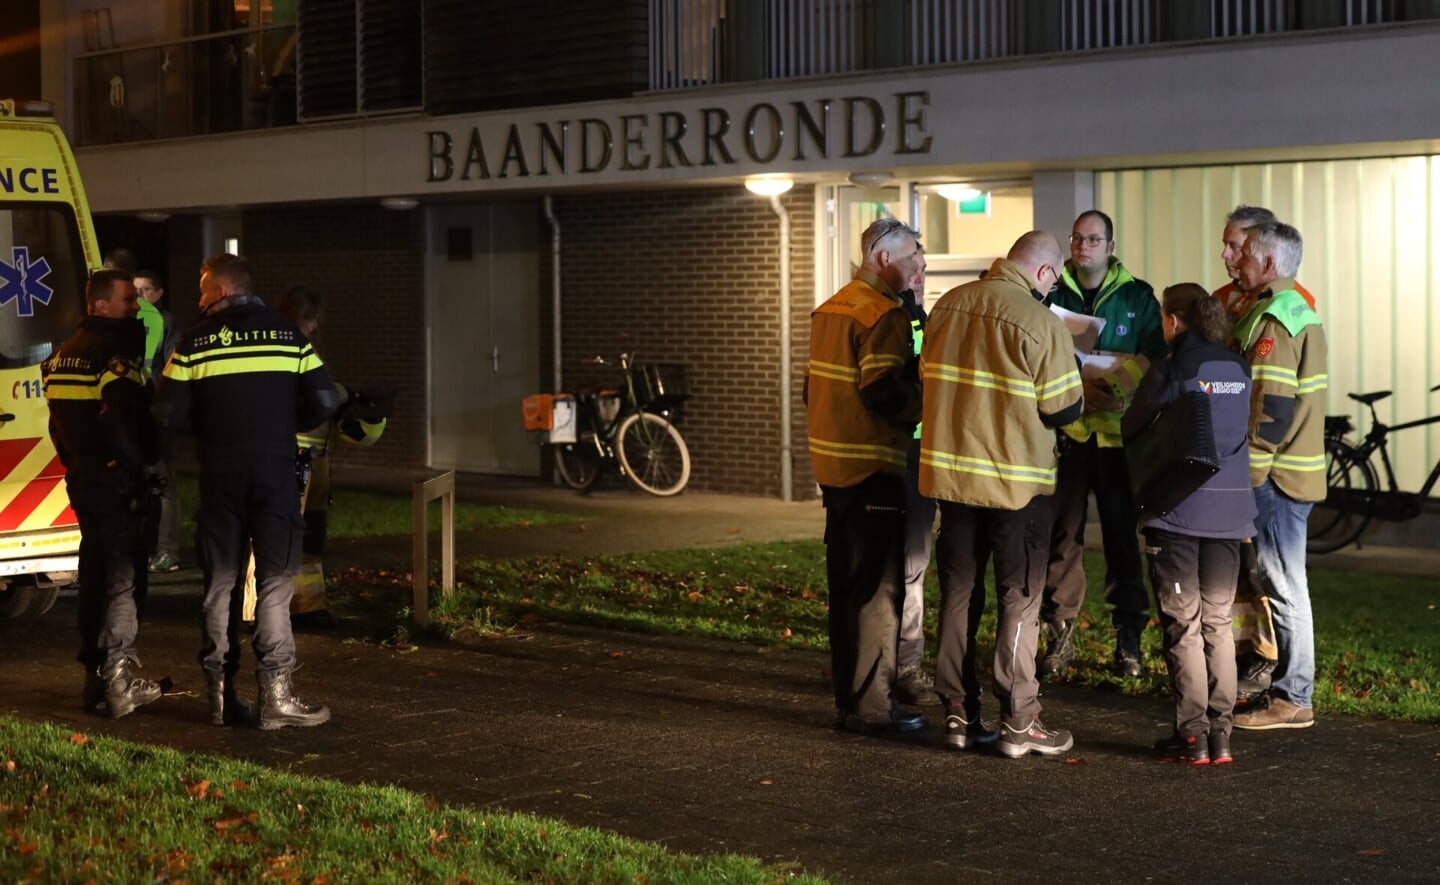 Door een lekkende cv-ketel in een van de appartementen van Baanderronde, moesten verschillende bewoners vannacht naar het ziekenhuis.